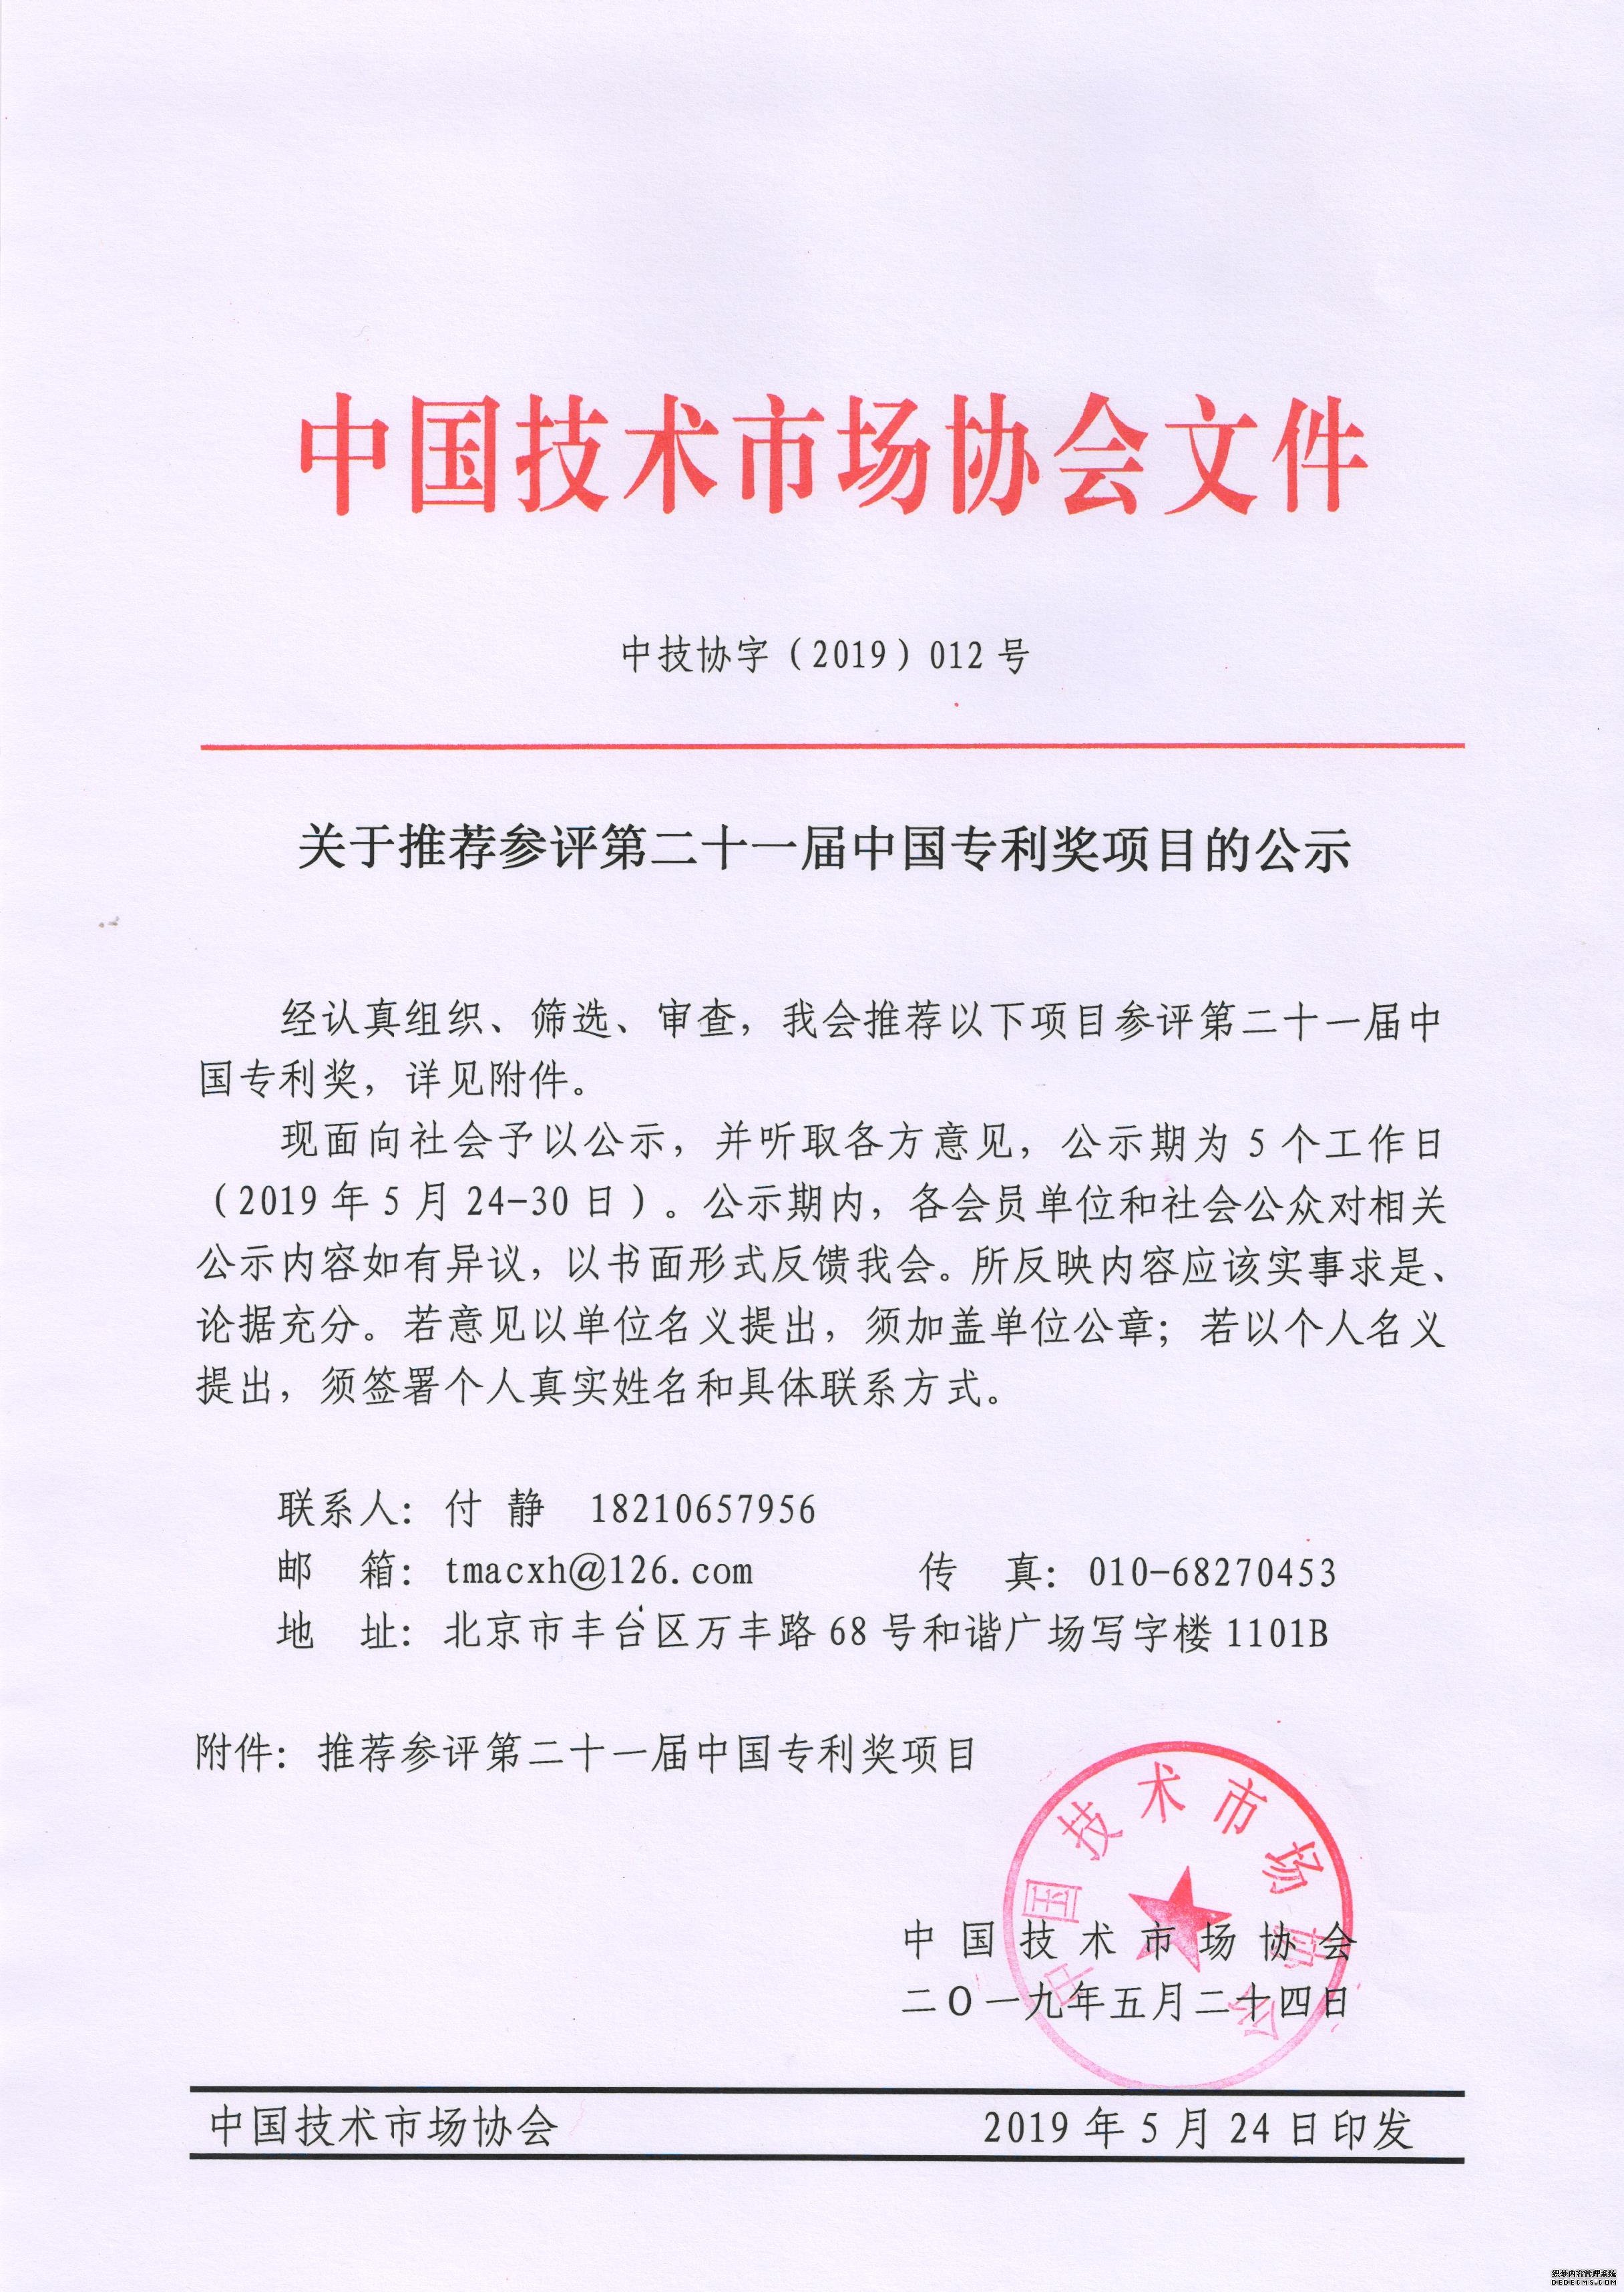 关于推荐参评第二十一届中国专利奖项目的公示.jpg